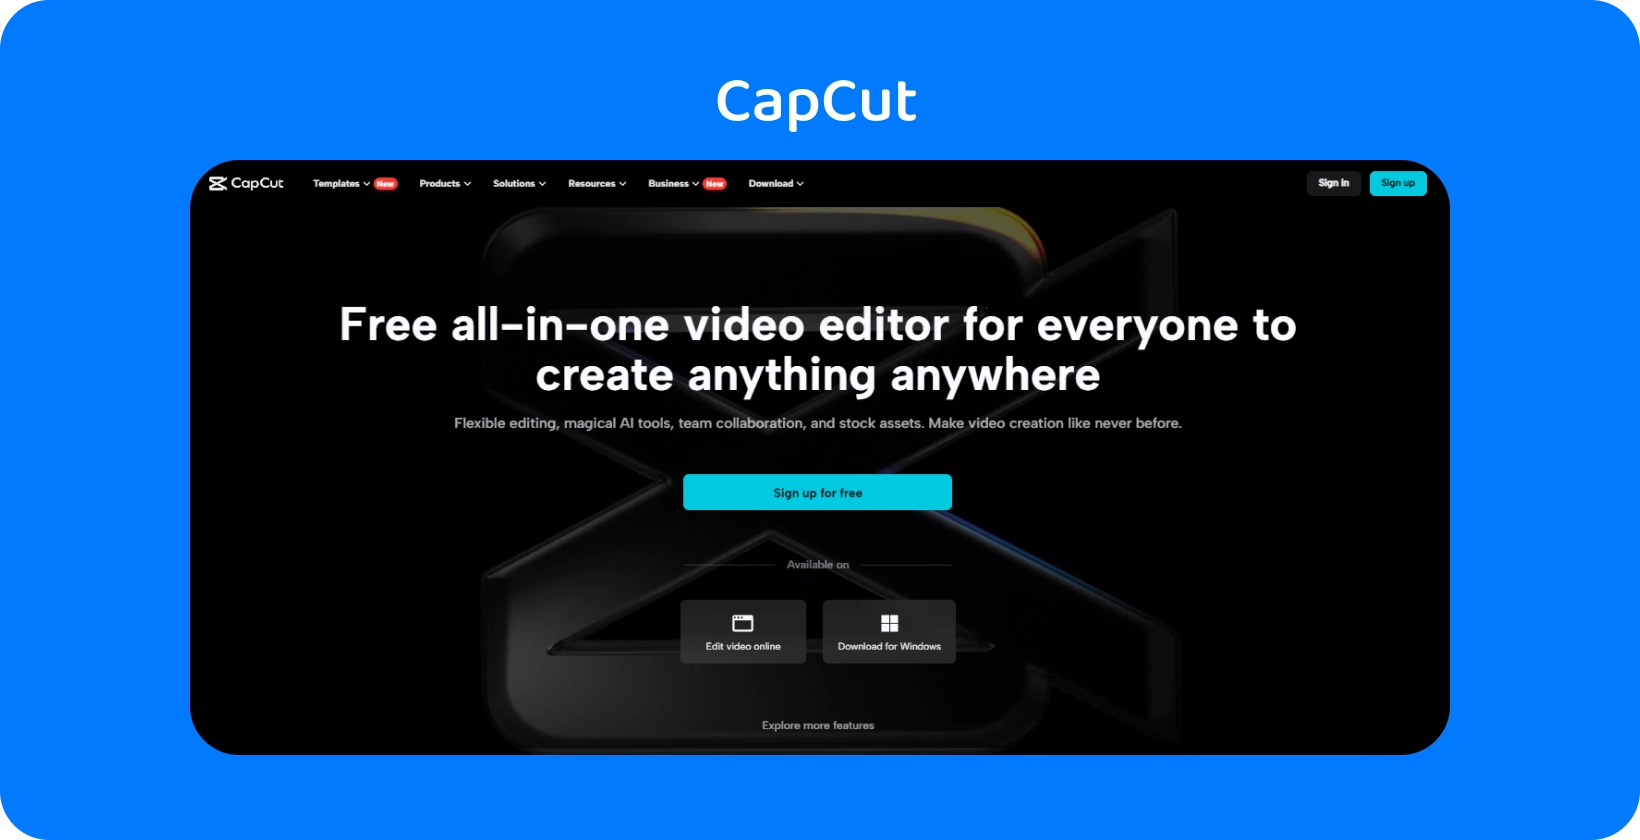 A página inicial do CapCut apresenta um editor de vídeo gratuito e tudo-em-um para criar conteúdo em qualquer dispositivo, com um design escuro e elegante.
